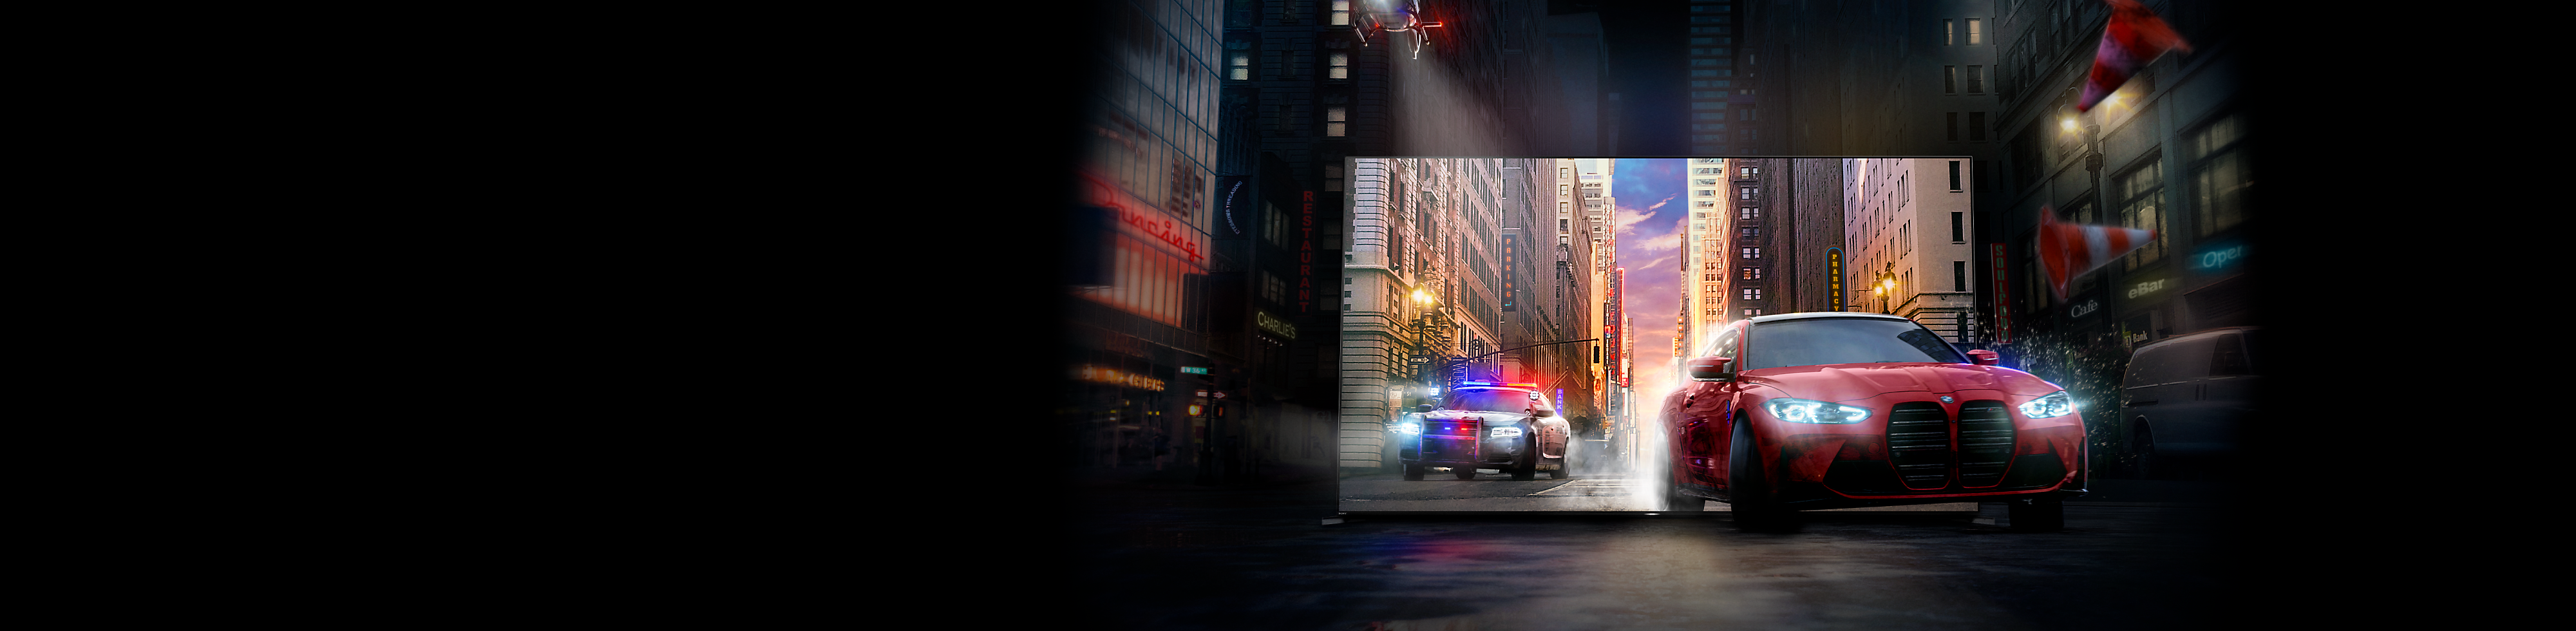 Un coche rojo seguido por un coche de policía sale de la pantalla del TV BRAVIA en una calle